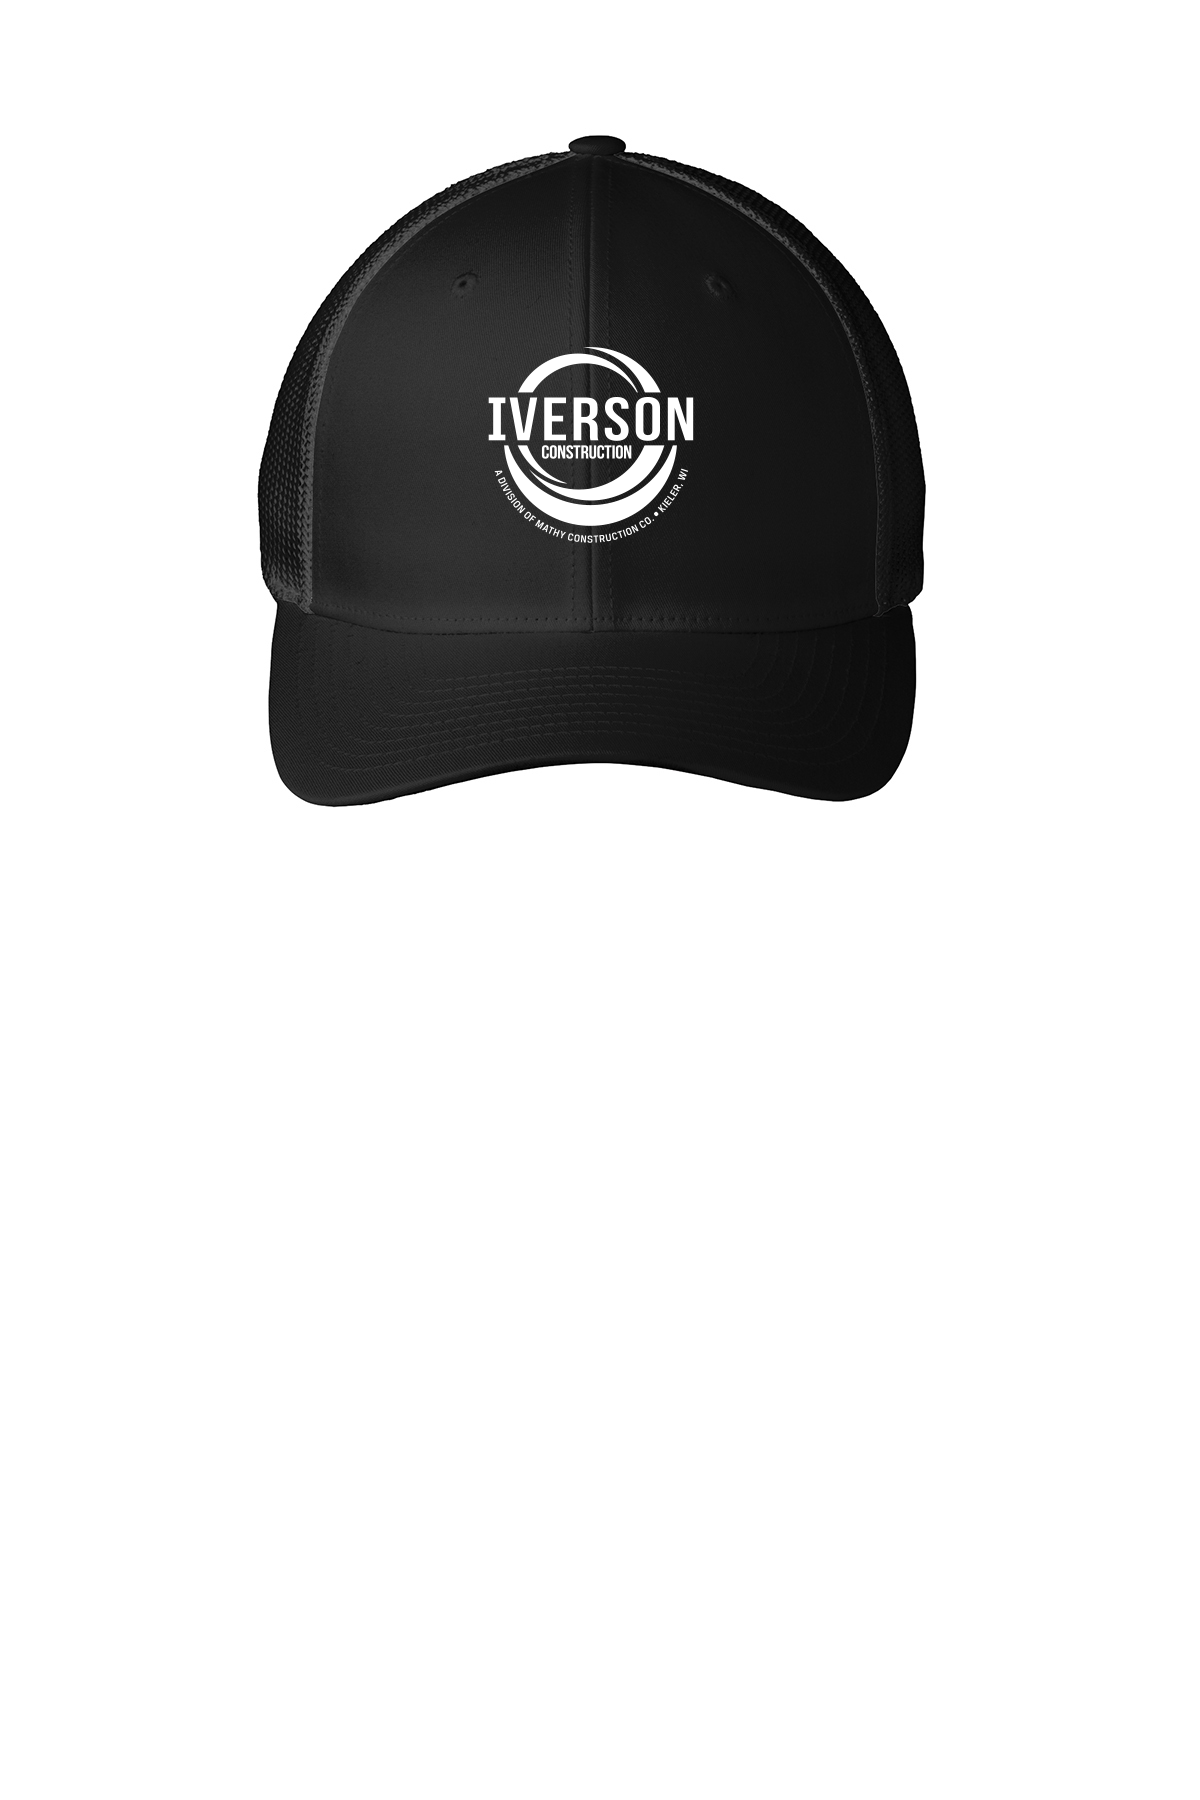 Iverson Construction Flexfit Mesh Back Cap